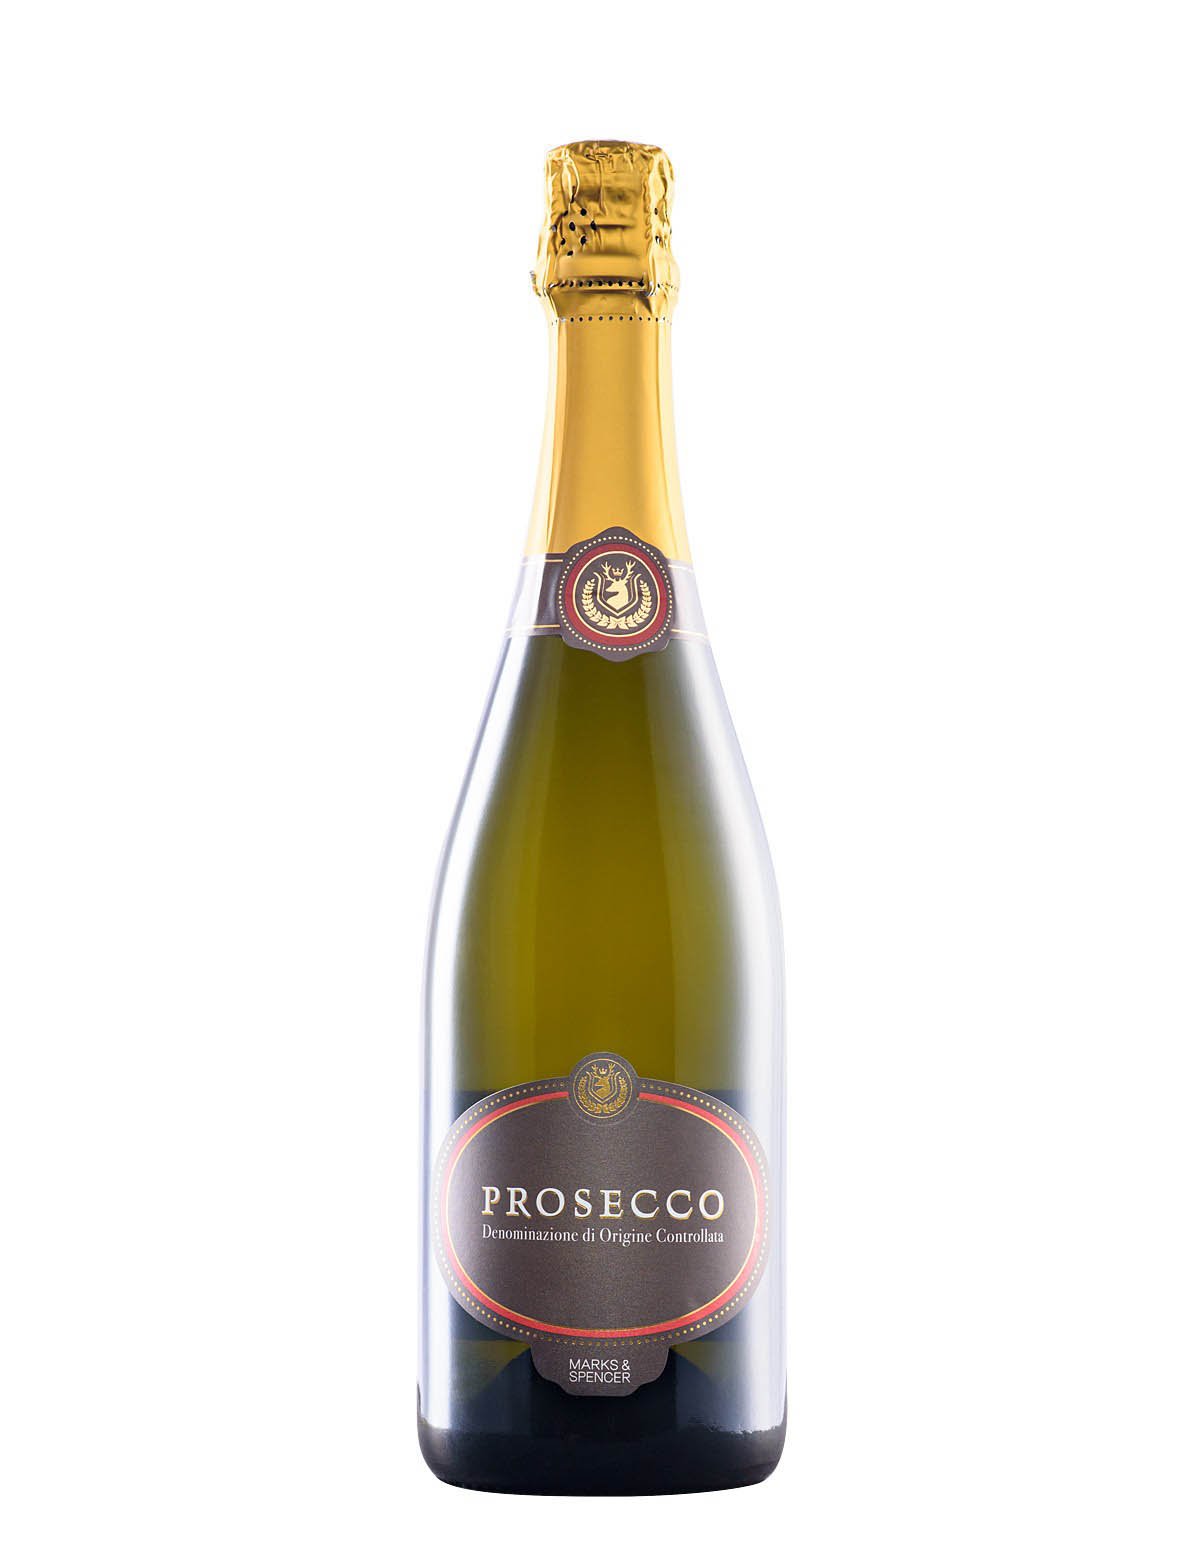  Prosecco Wine 